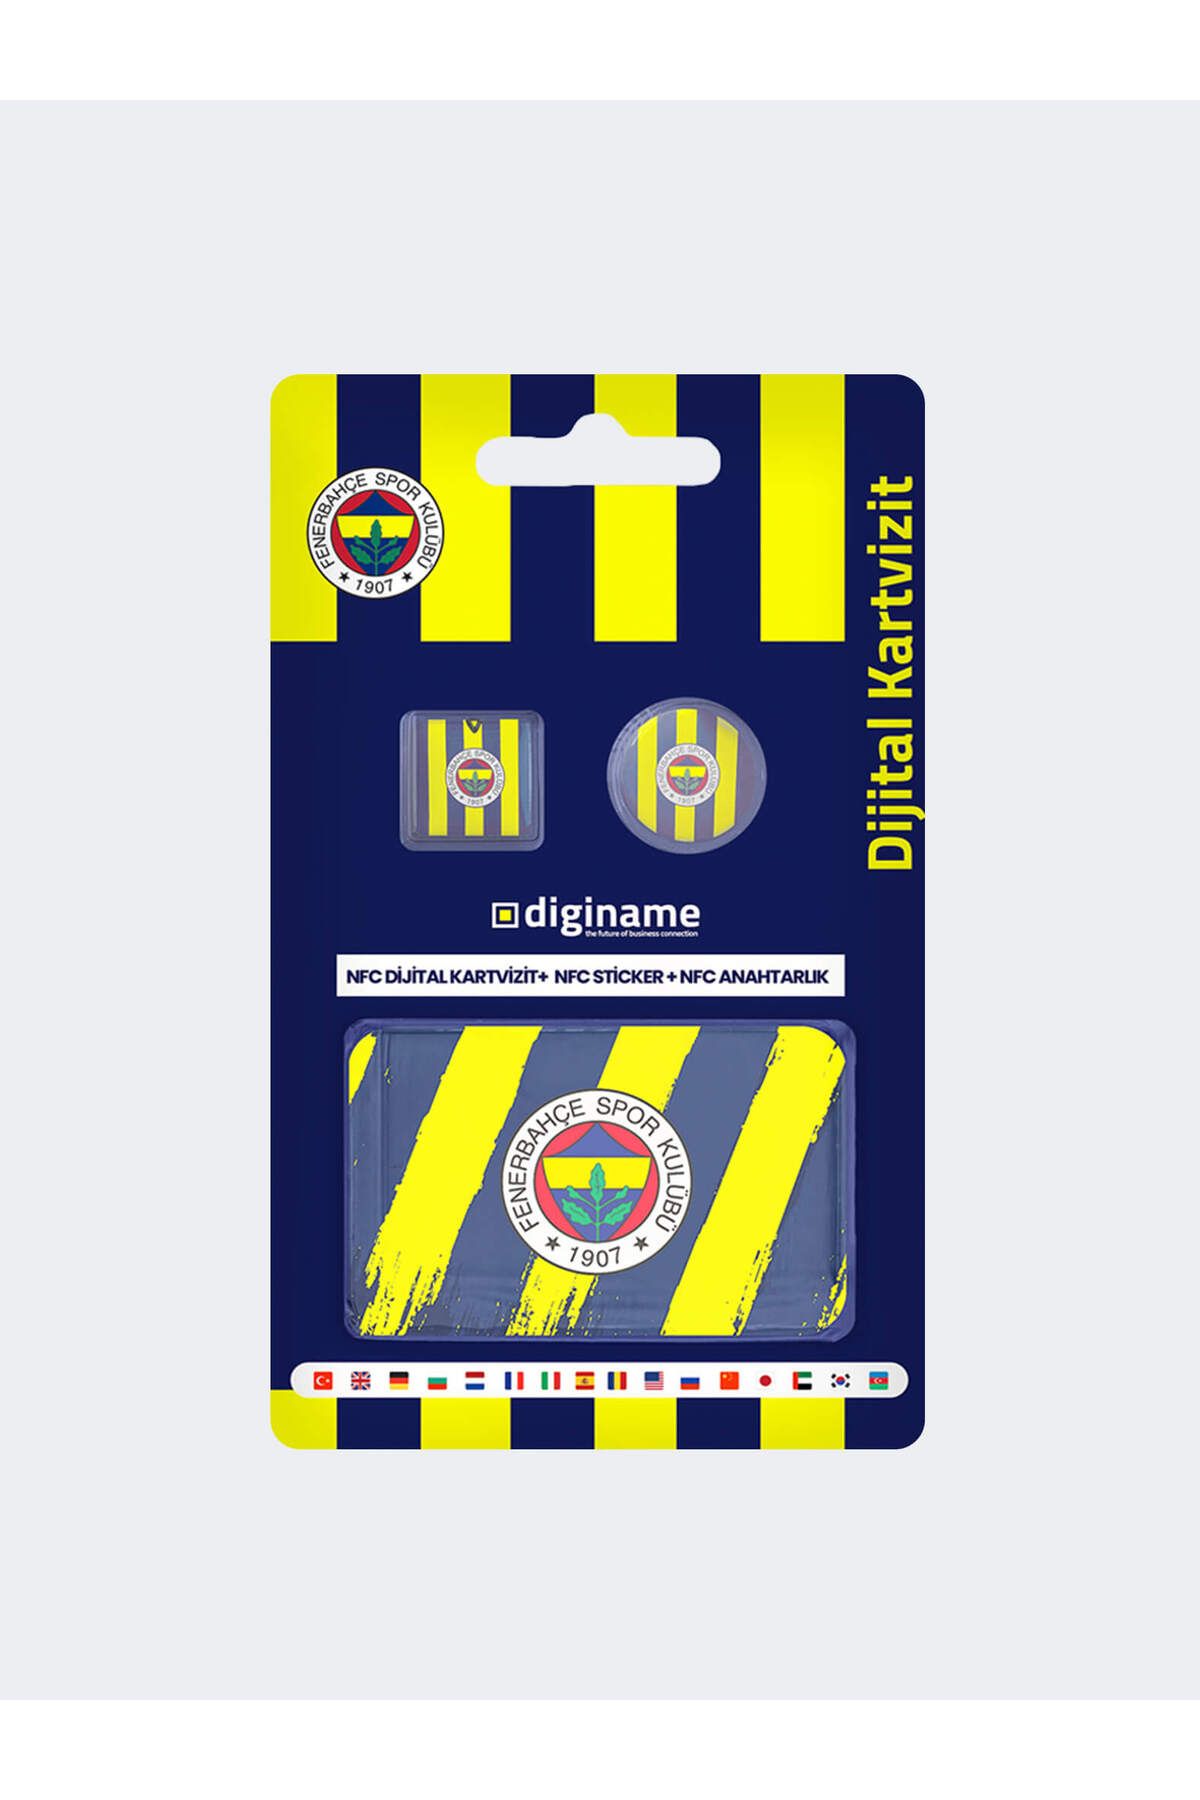 Fenerbahçe FB ÜÇLÜ DIJITAL KARTVIZIT PAKET NFC Q